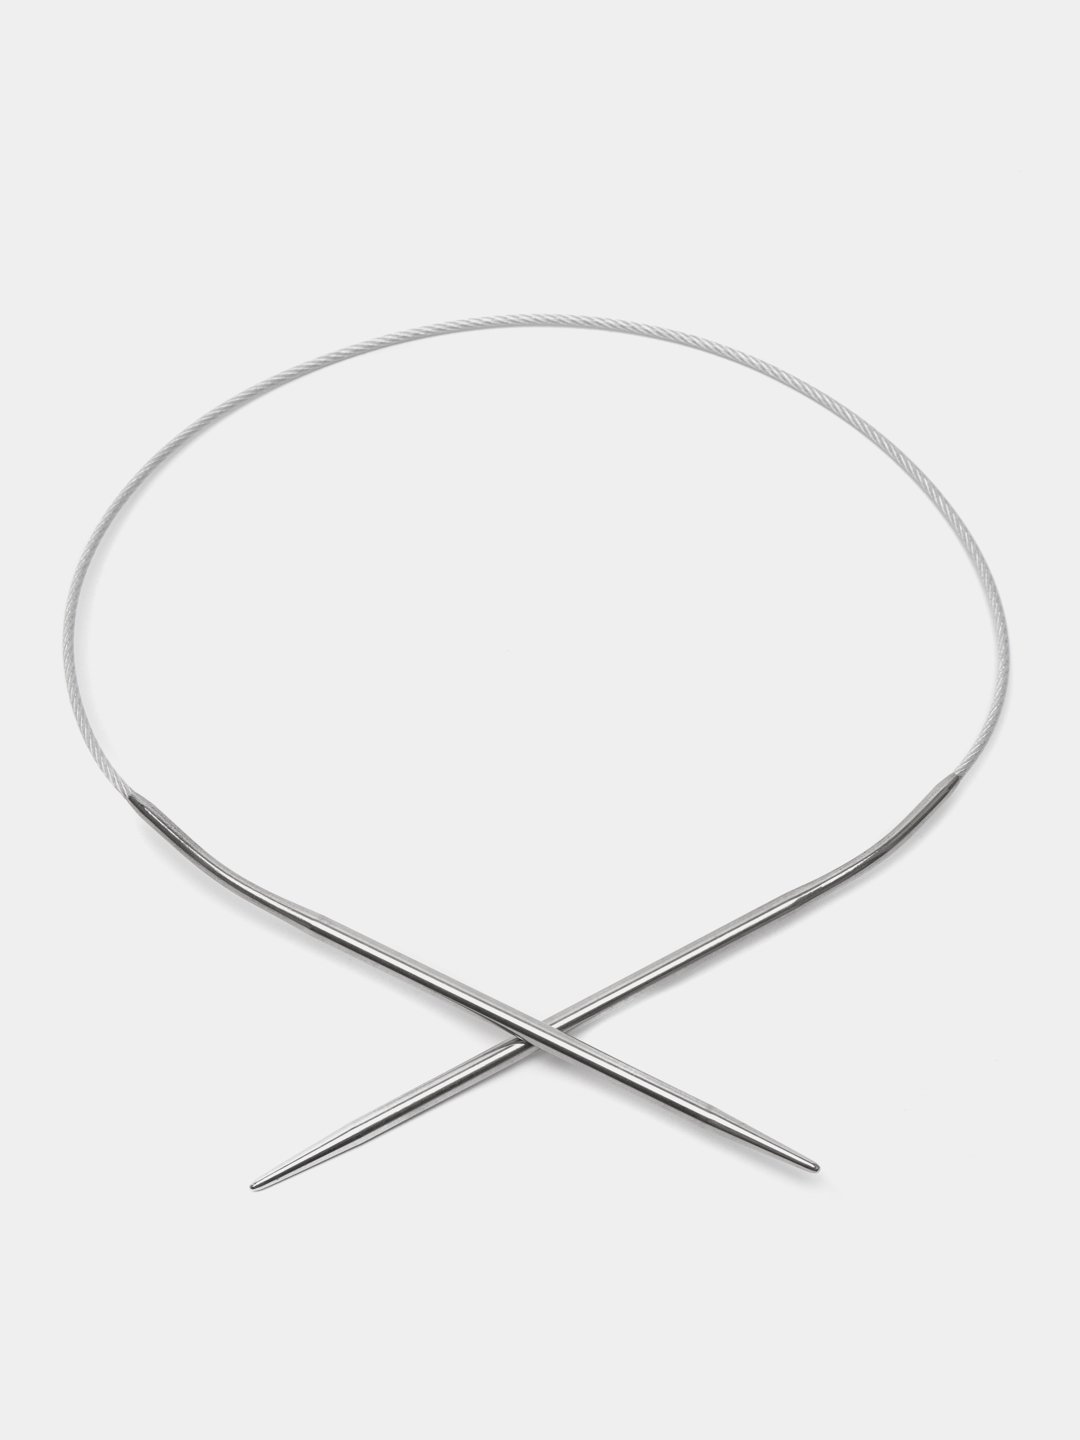 Спицы для вязания, круговые, с металлическим тросом, d = 1.2 мм, 100 см